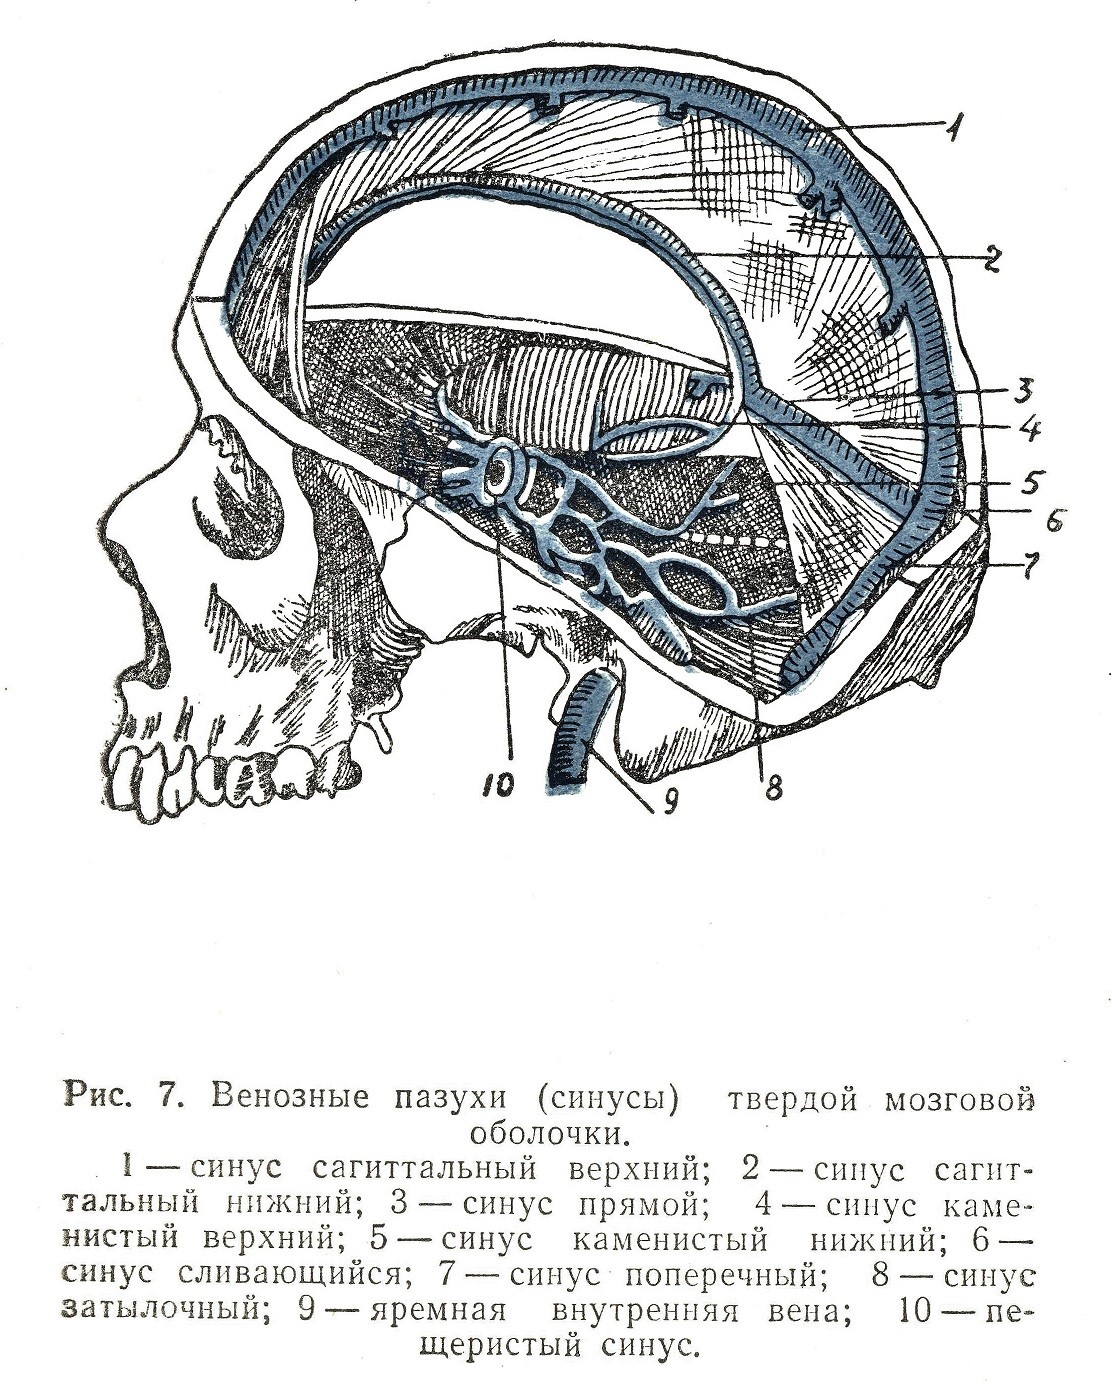 Венозные пазухи (синусы) твердой мозговой оболочки